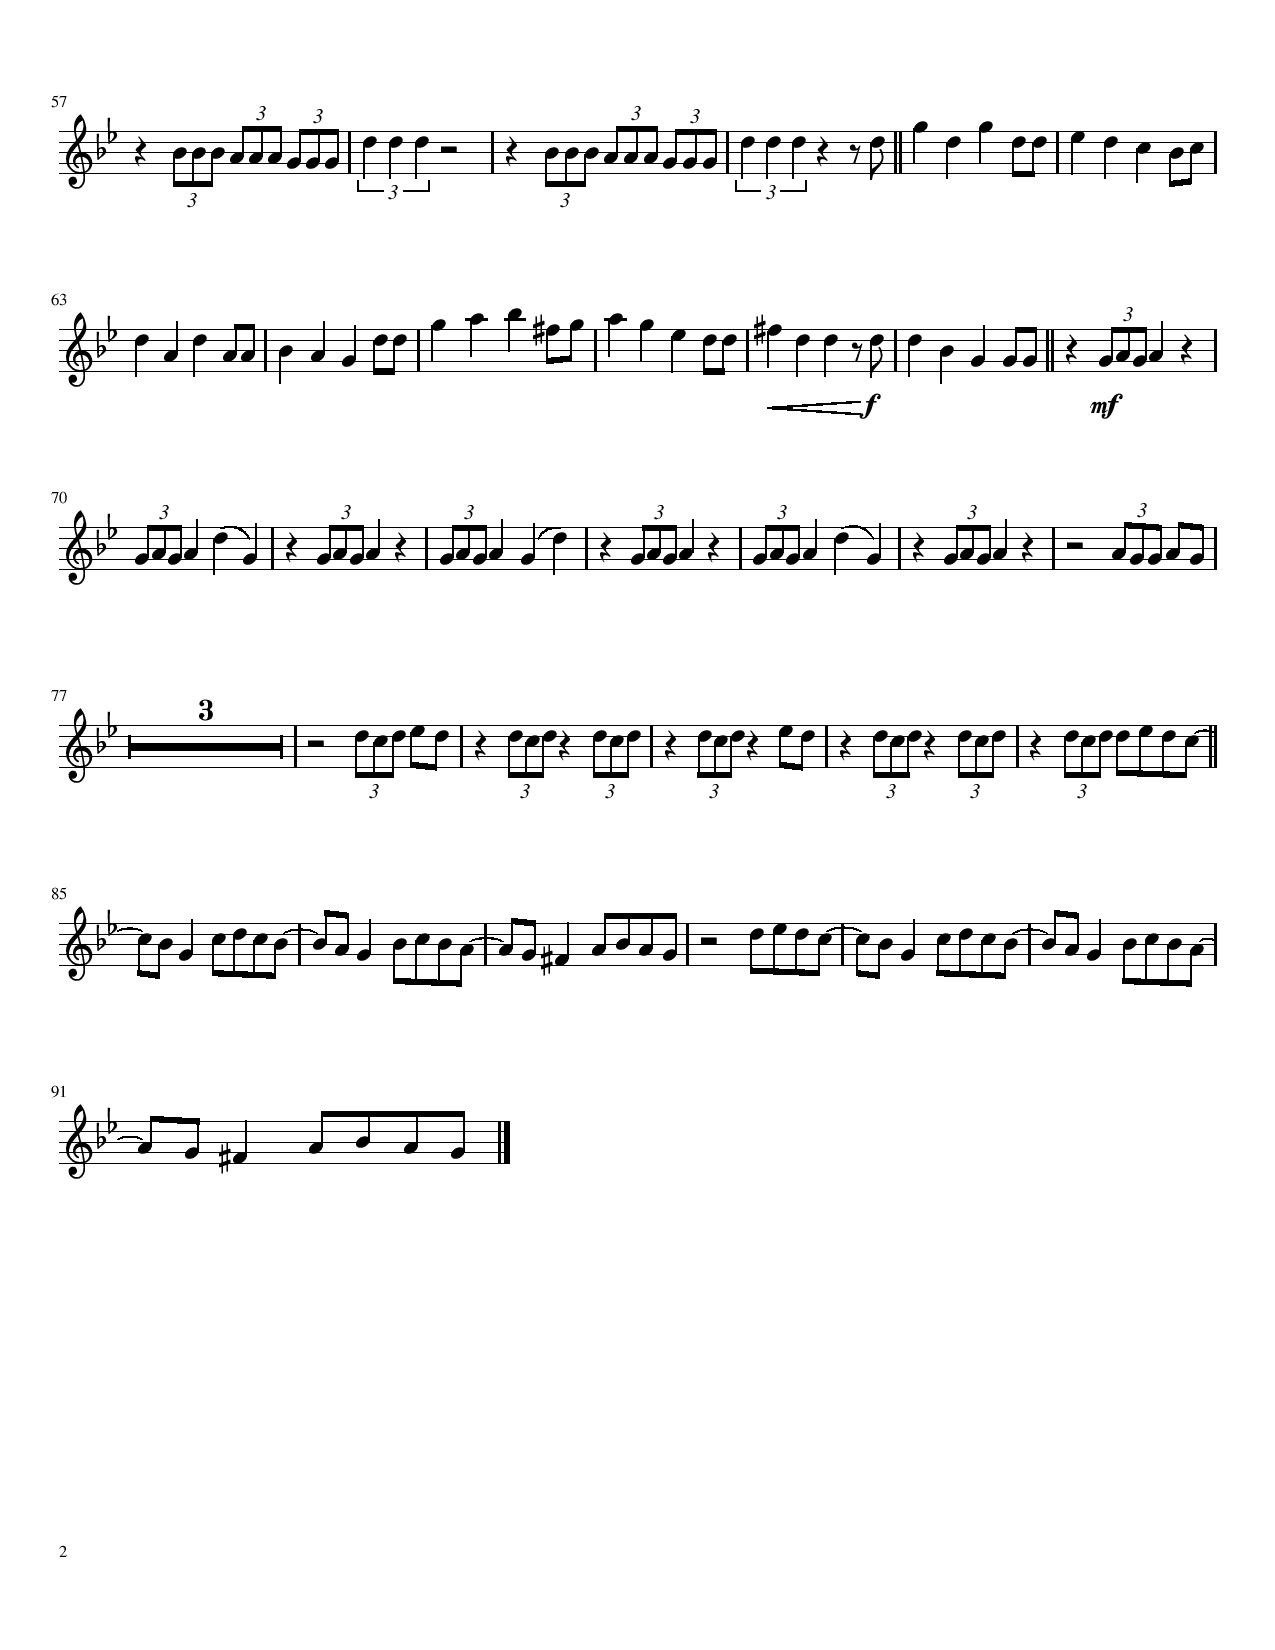 Bury a Friend Violin Sheet Music | Free Sheet Music - Bury A Friend Piano Chords